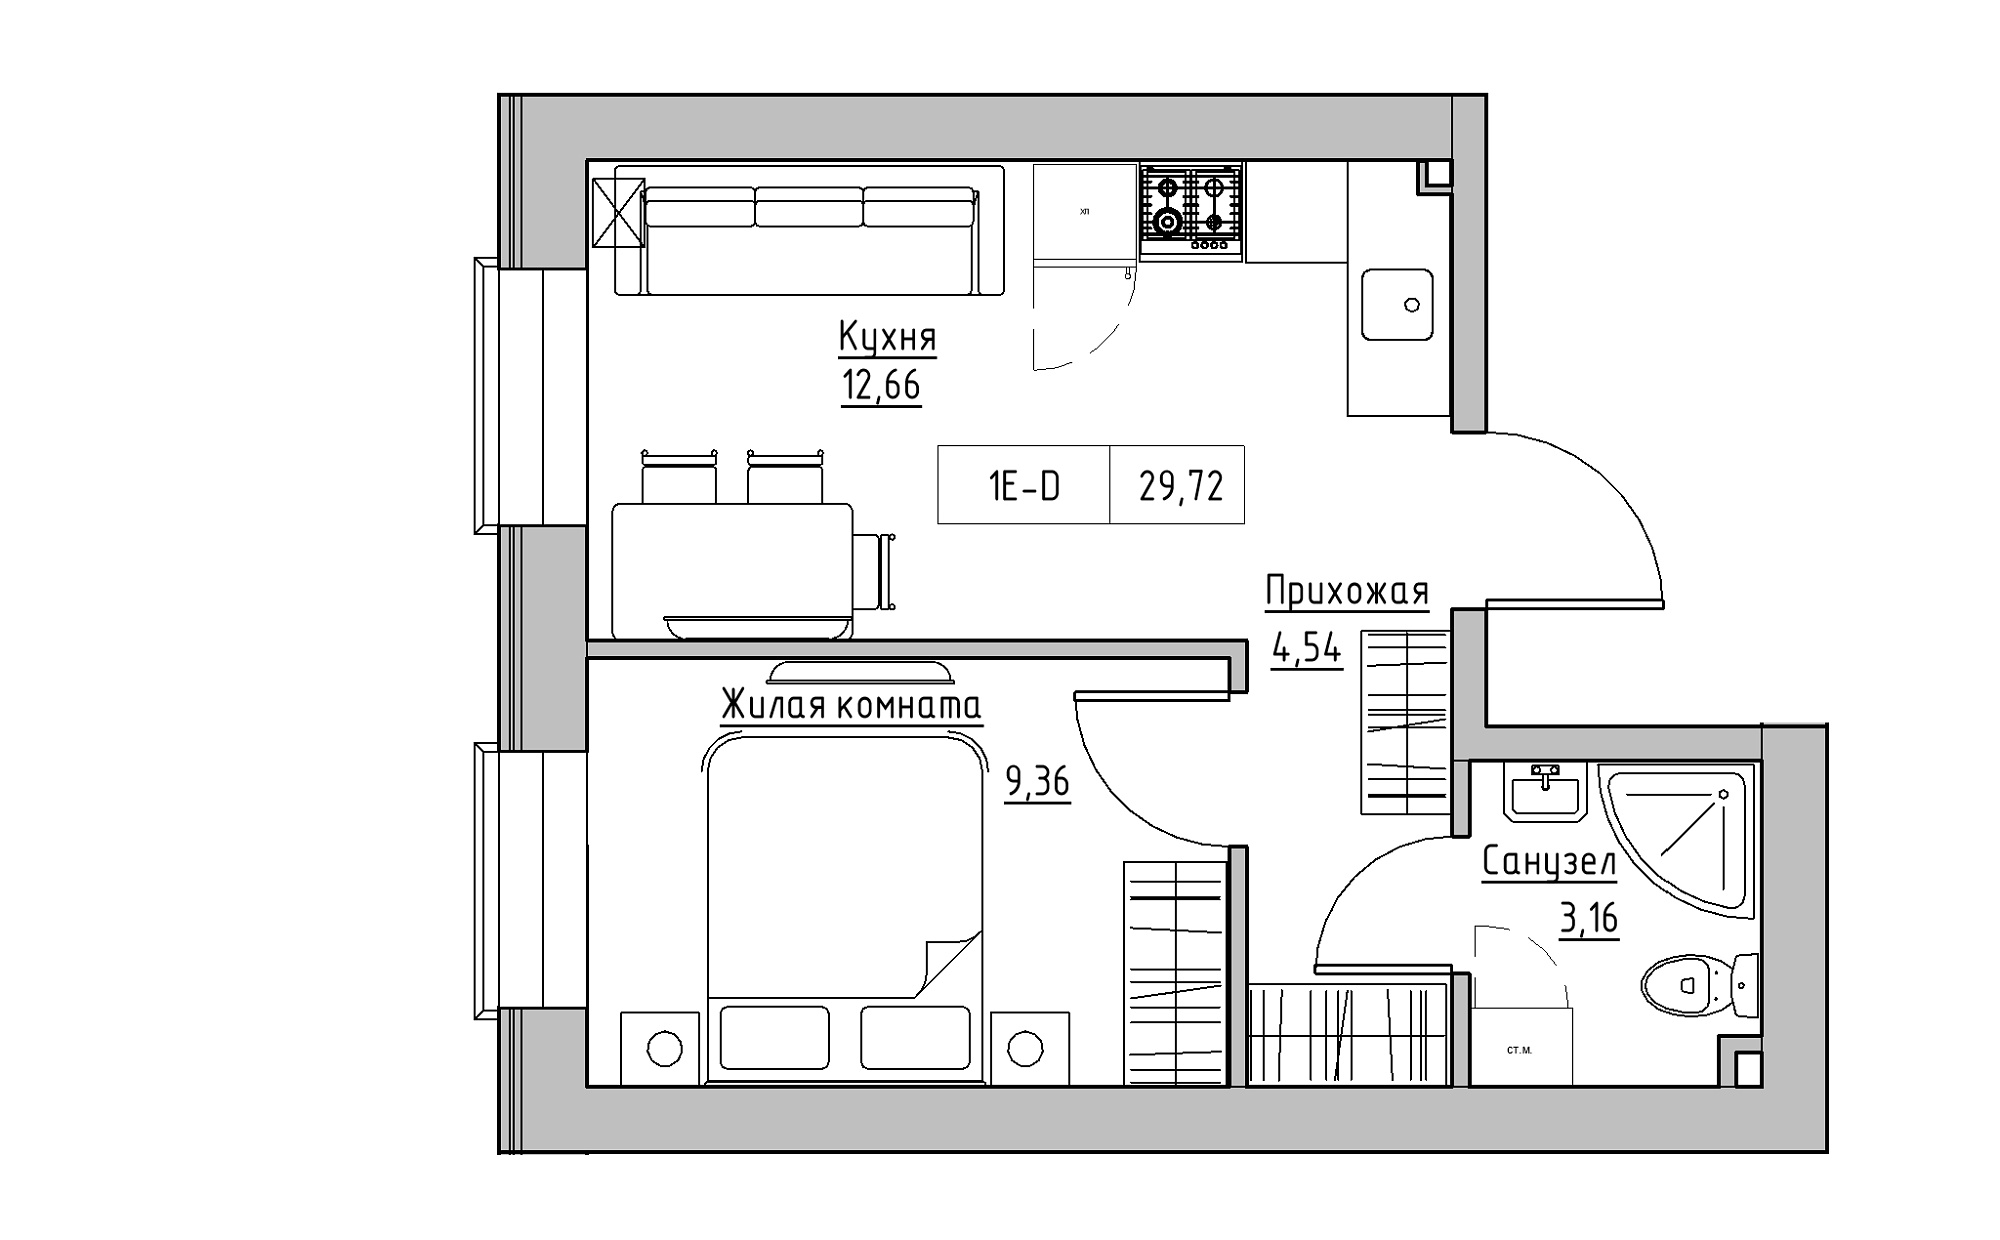 Планування 1-к квартира площею 29.72м2, KS-022-01/0012.